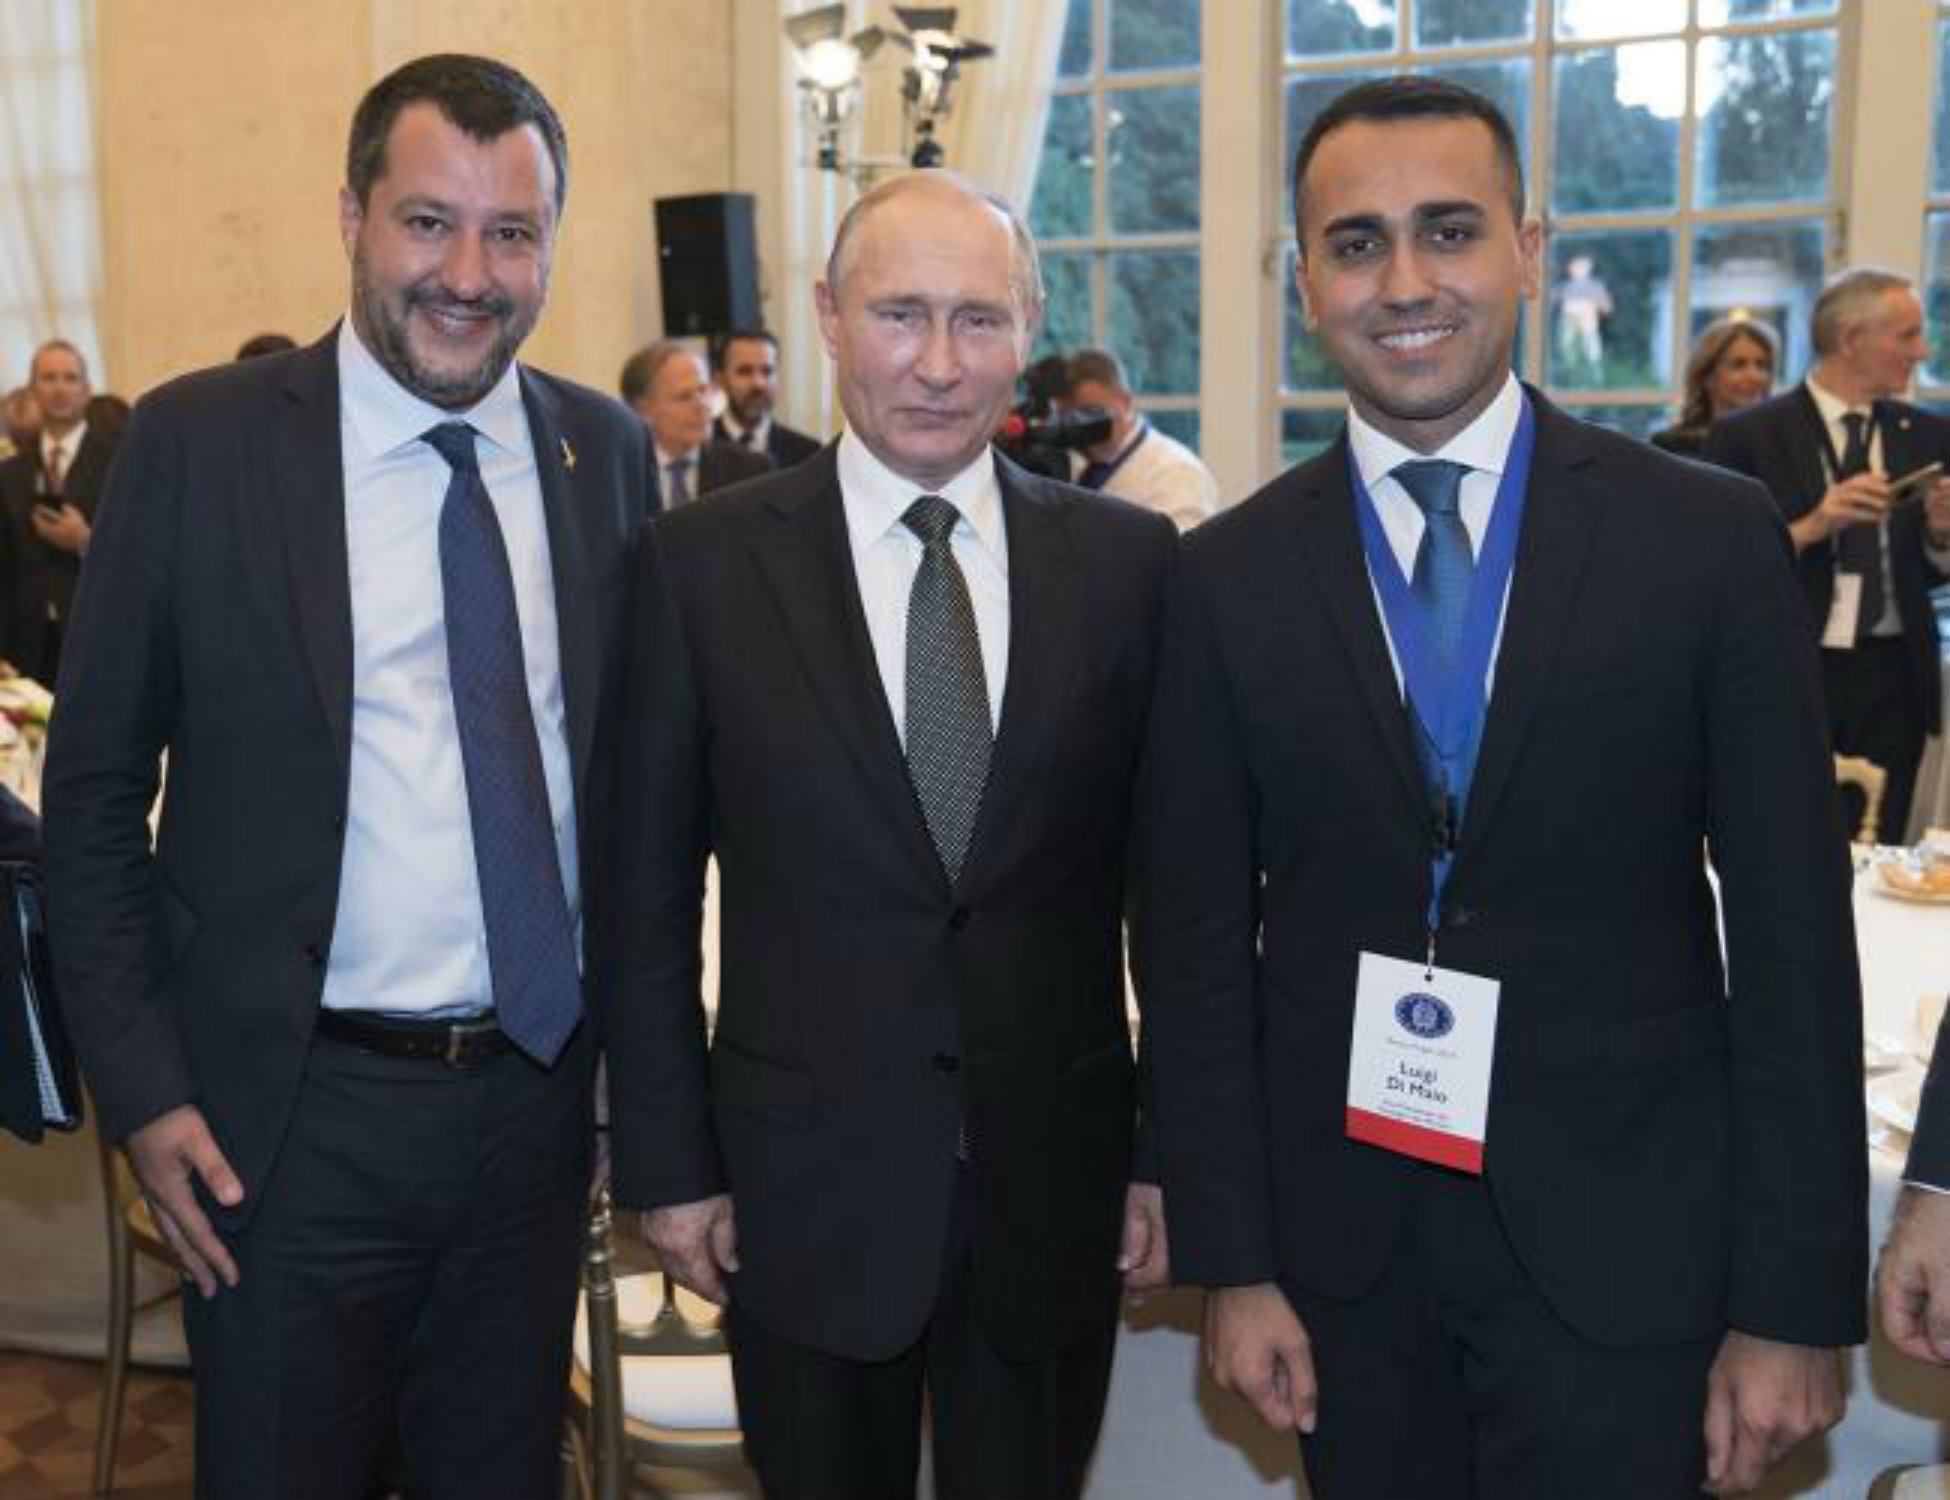 Enxampen un ajudant de Salvini negociant fons secrets russos